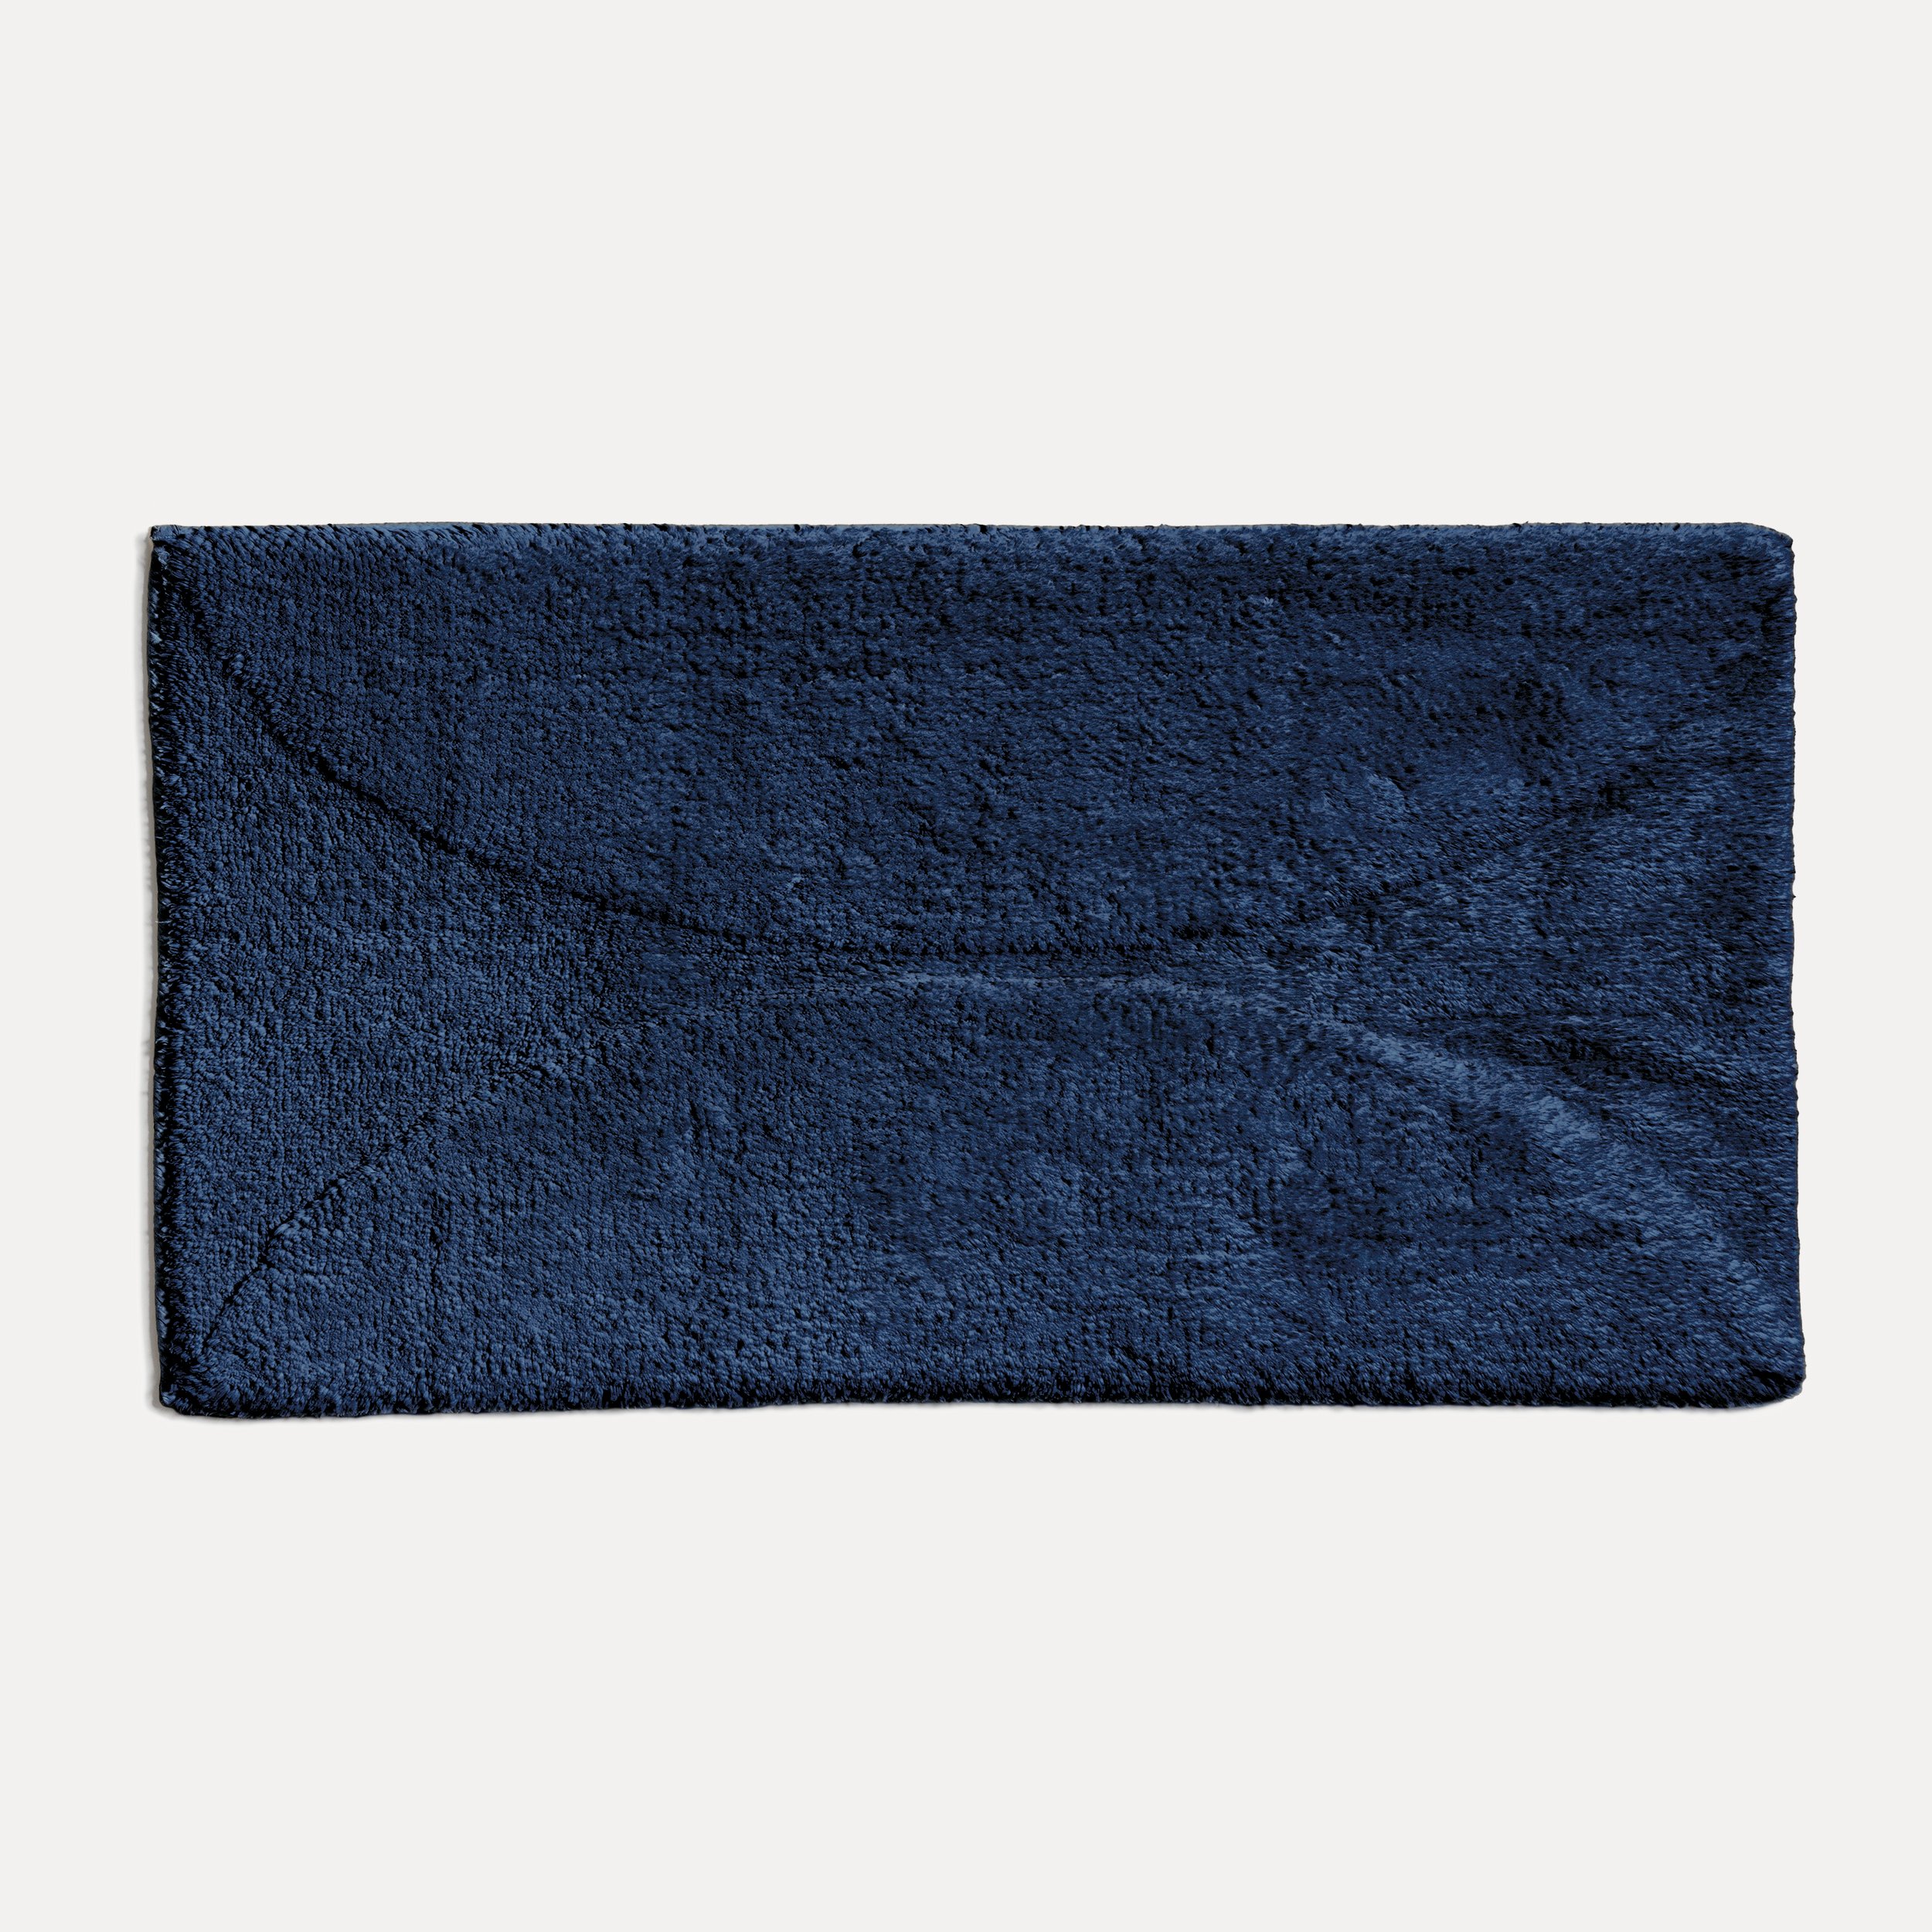 Blau Autumn blue)| cm 60x100 möve (dark Delights MÖVE Badematte